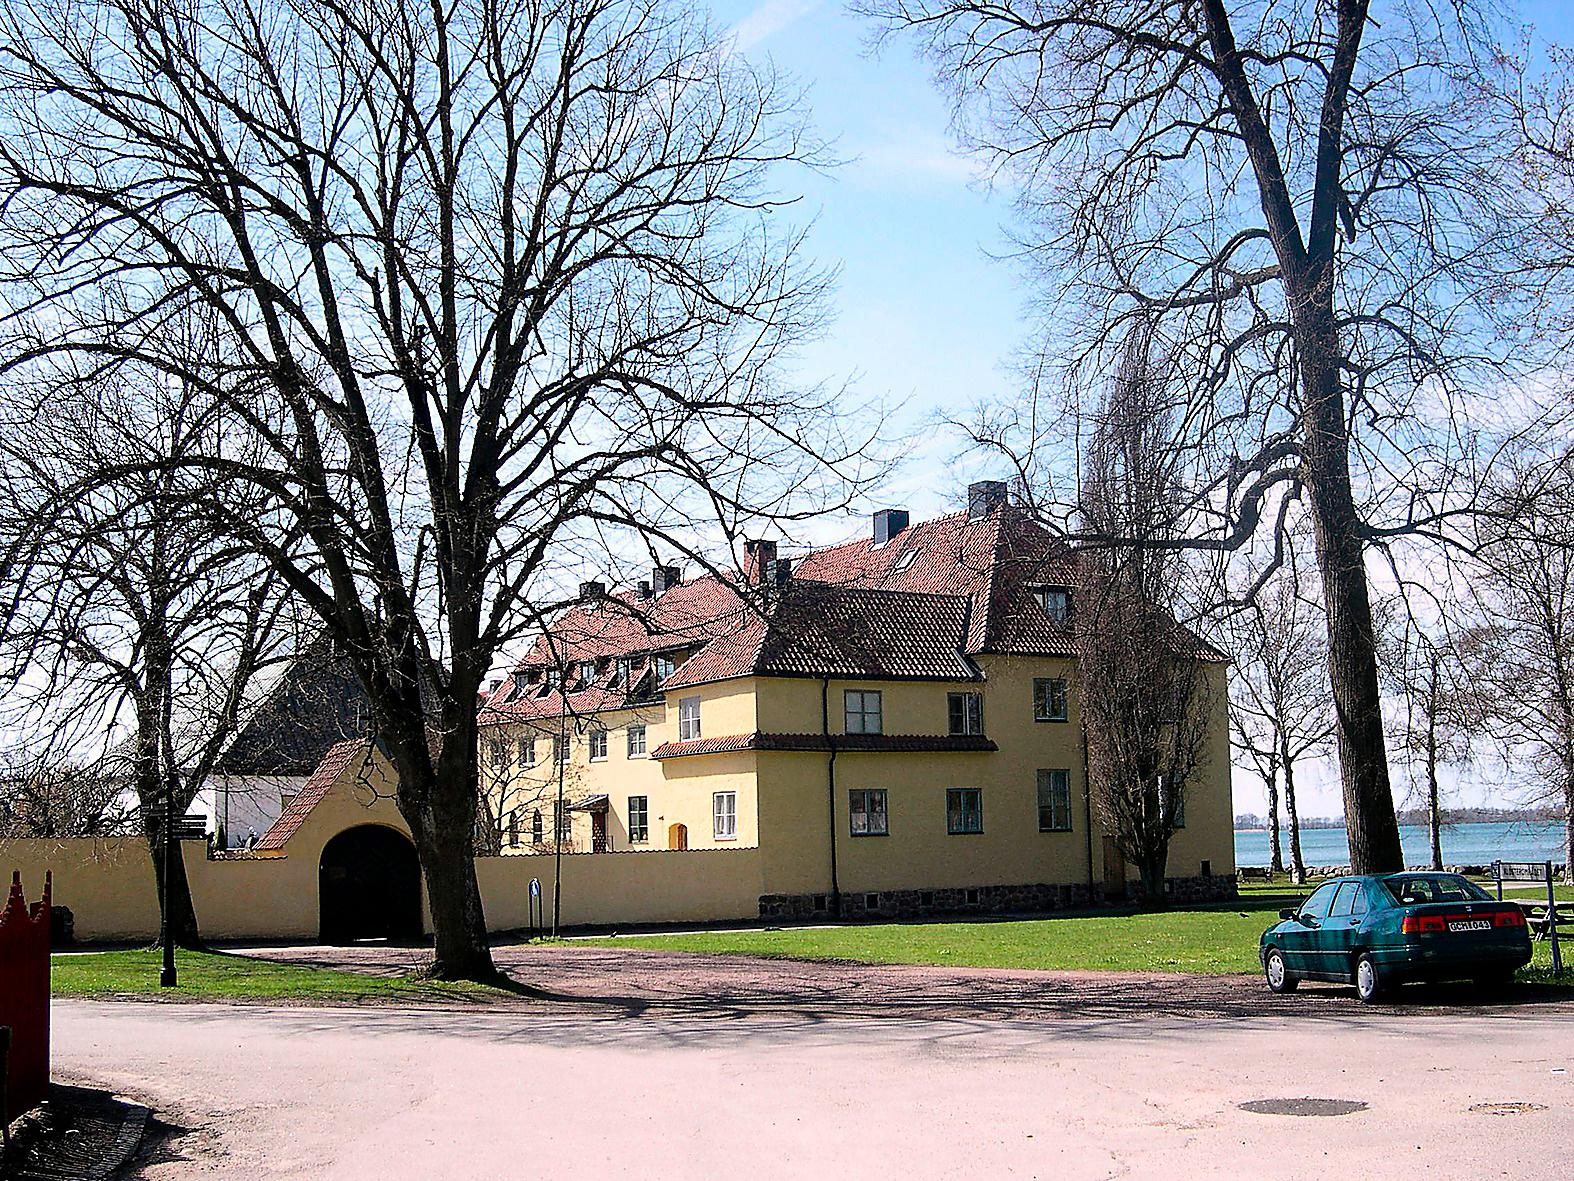 Vadstena kloster i Östergötland – Sveriges kanske mest kända. Här bildades en gång Birgittaorden. 